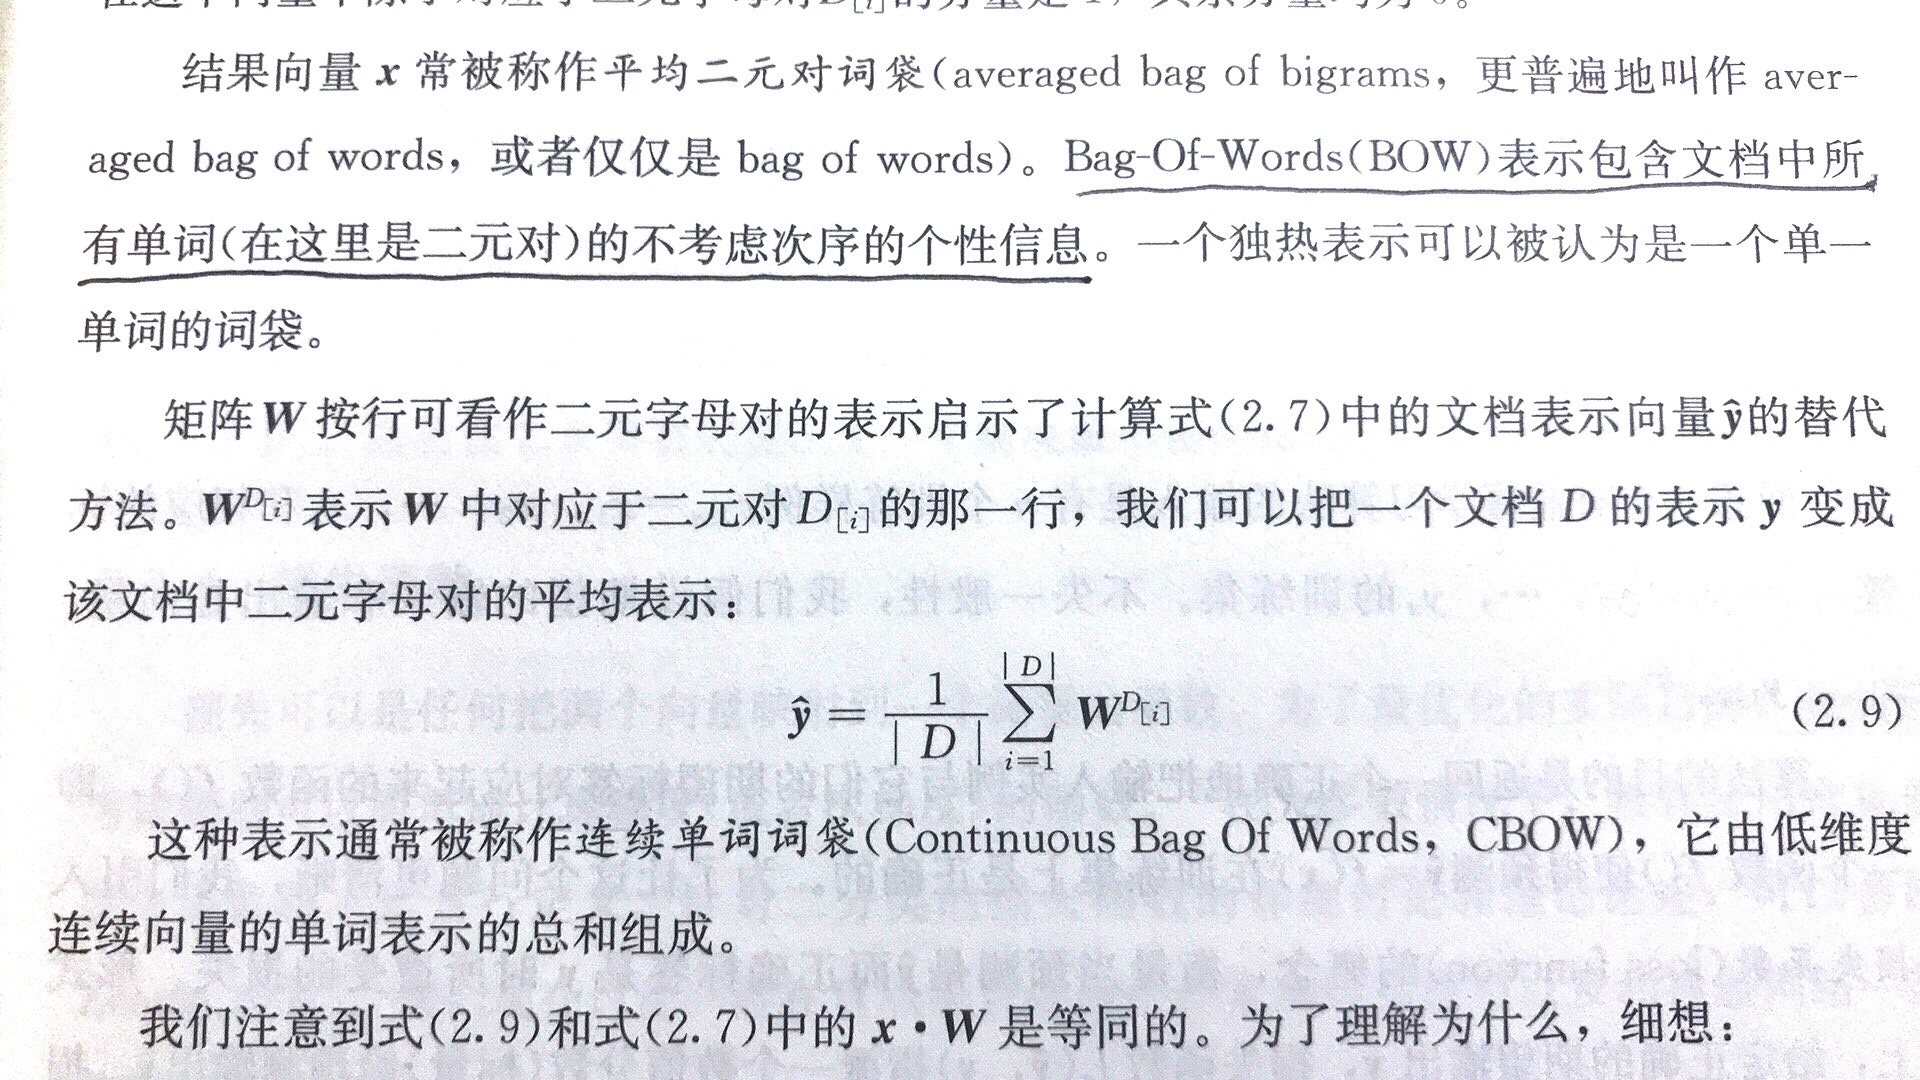 这本书有些地方翻译的不很通顺，读着很费劲。比如中间这句"矩阵W..."，看得头大。